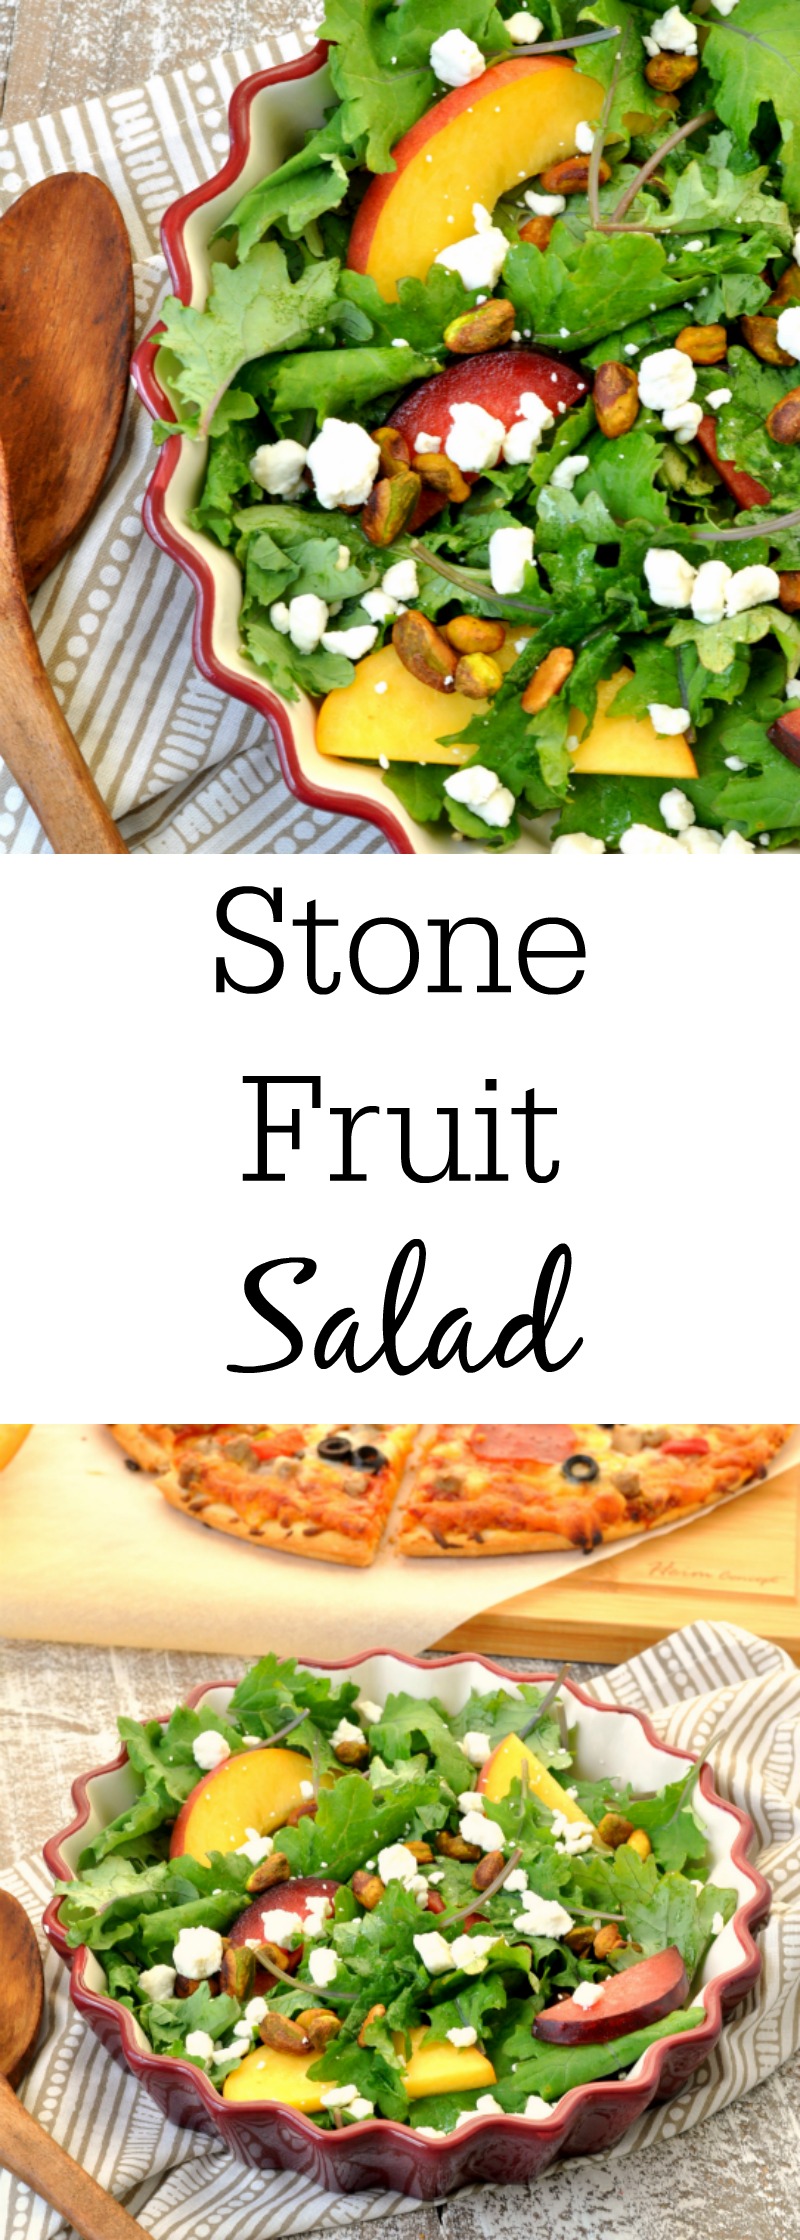 Stone Fruit Salad